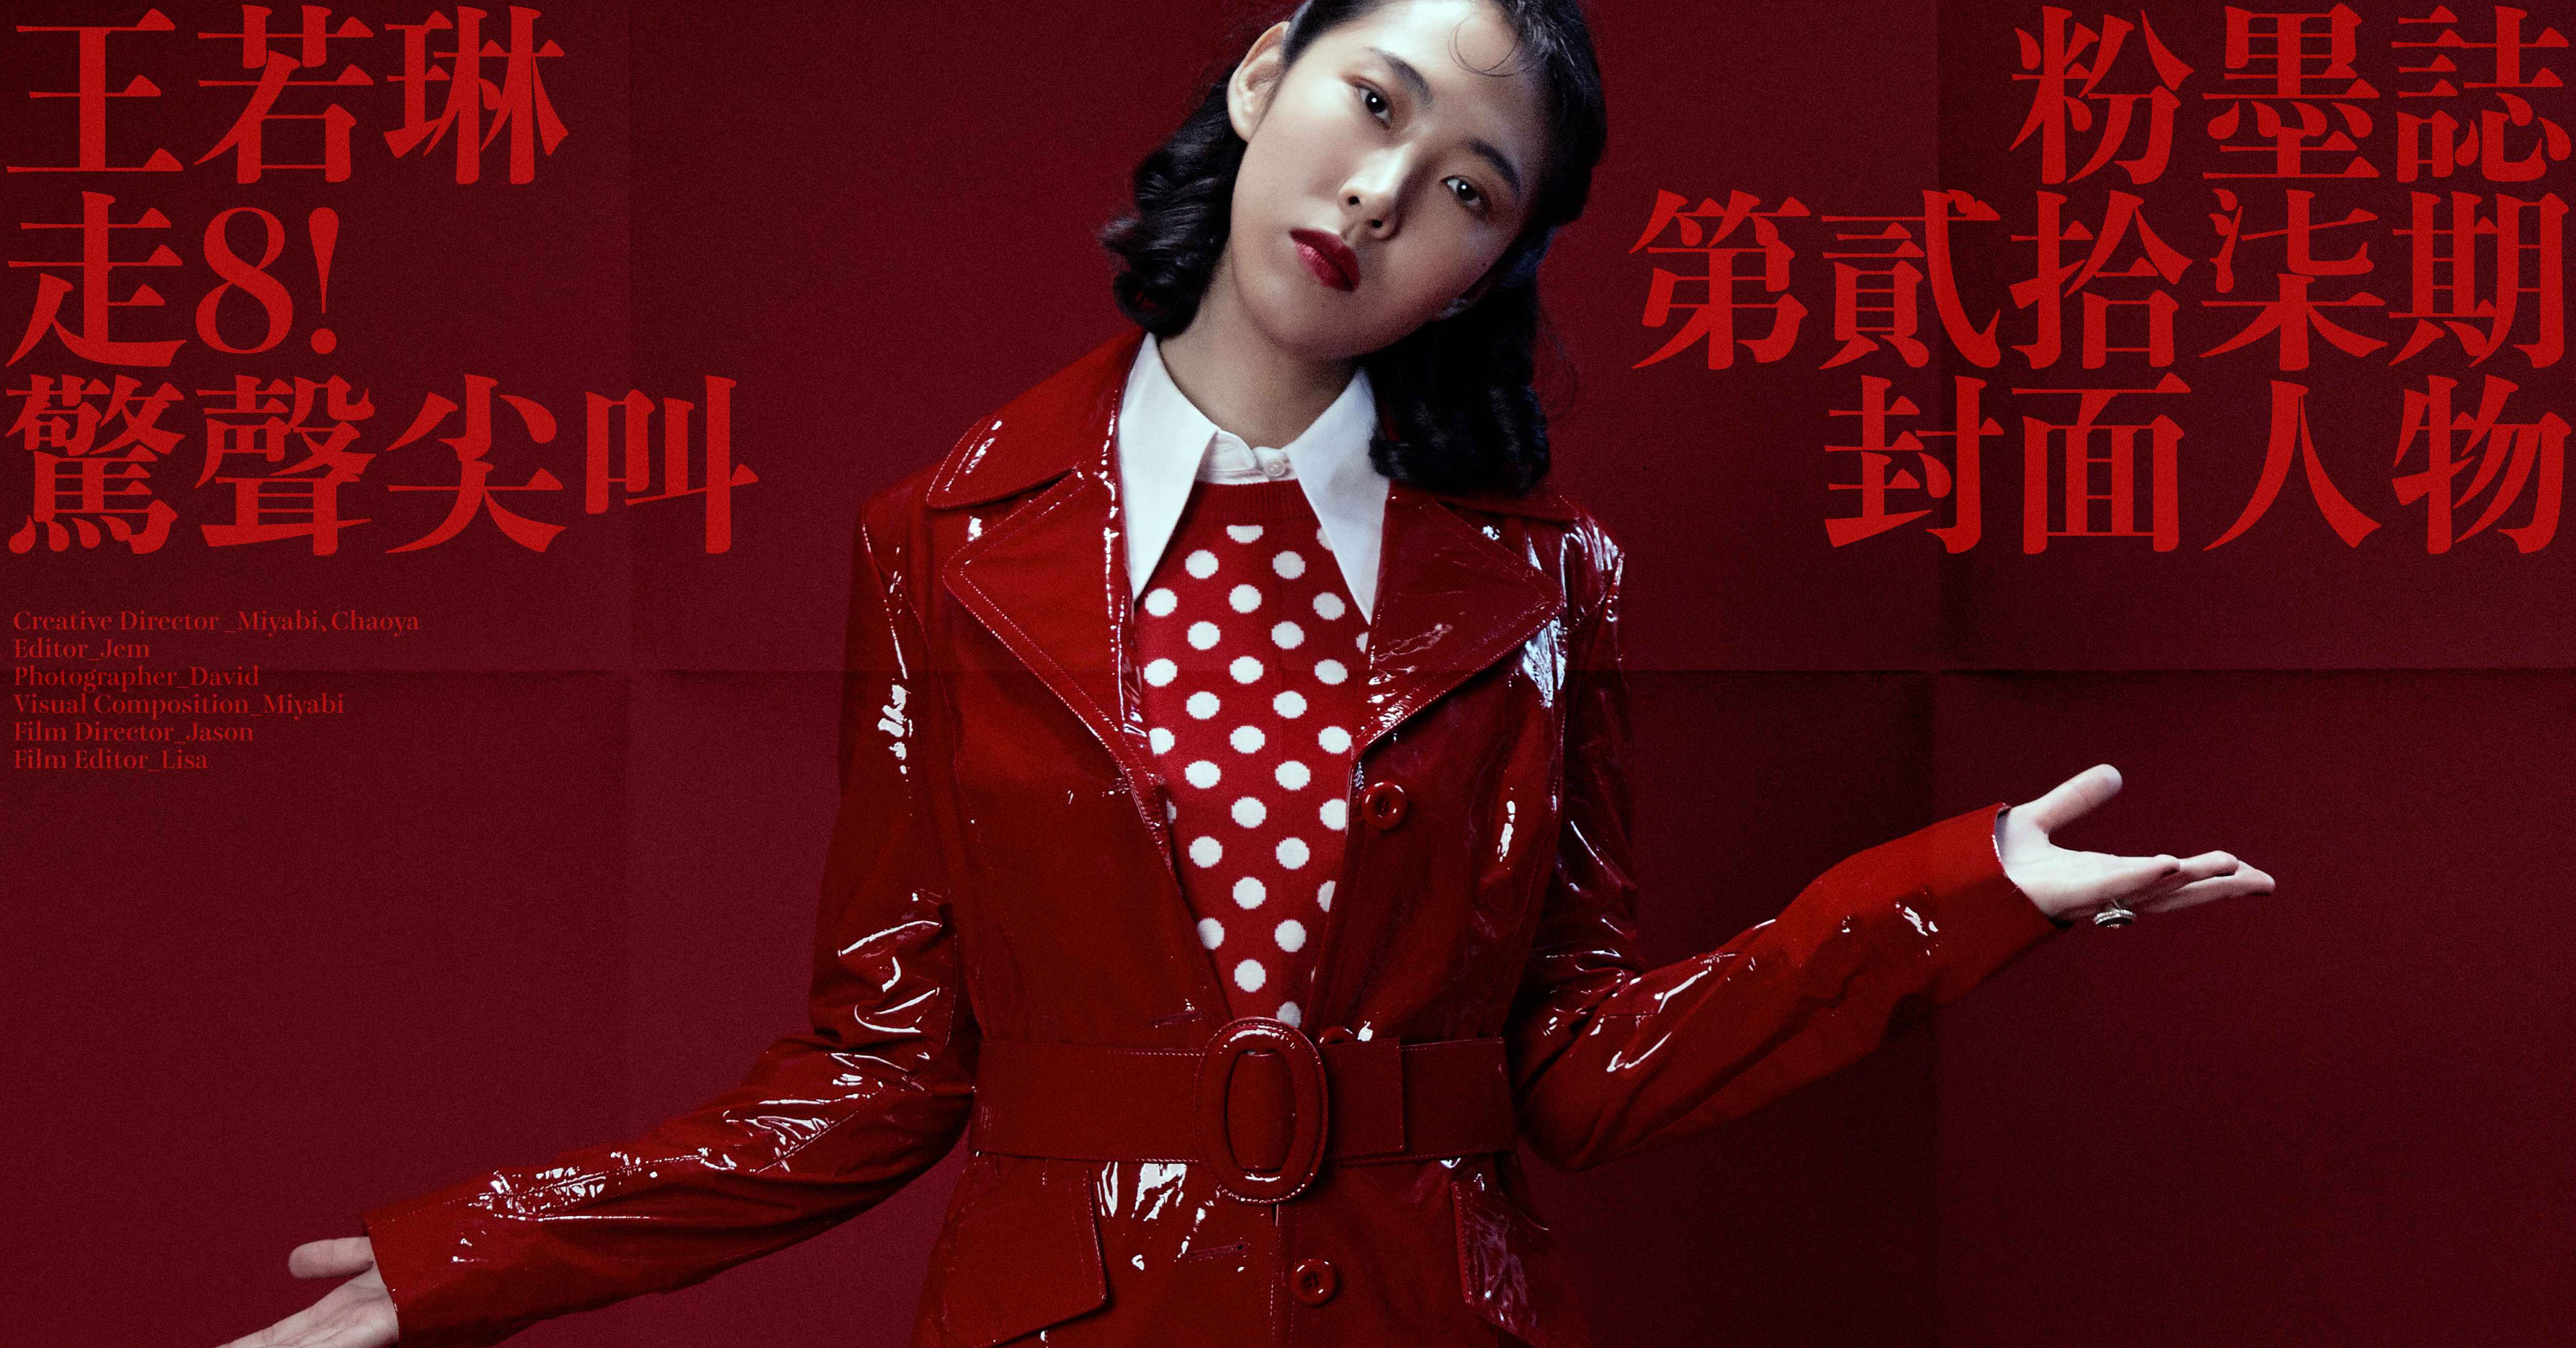 台裔美籍创作女歌手王若琳2004-2022年发行专辑、单曲合集[无损FLAC+MP3+WAV/12.93GB]百度云盘打包下载 影音资源 第2张